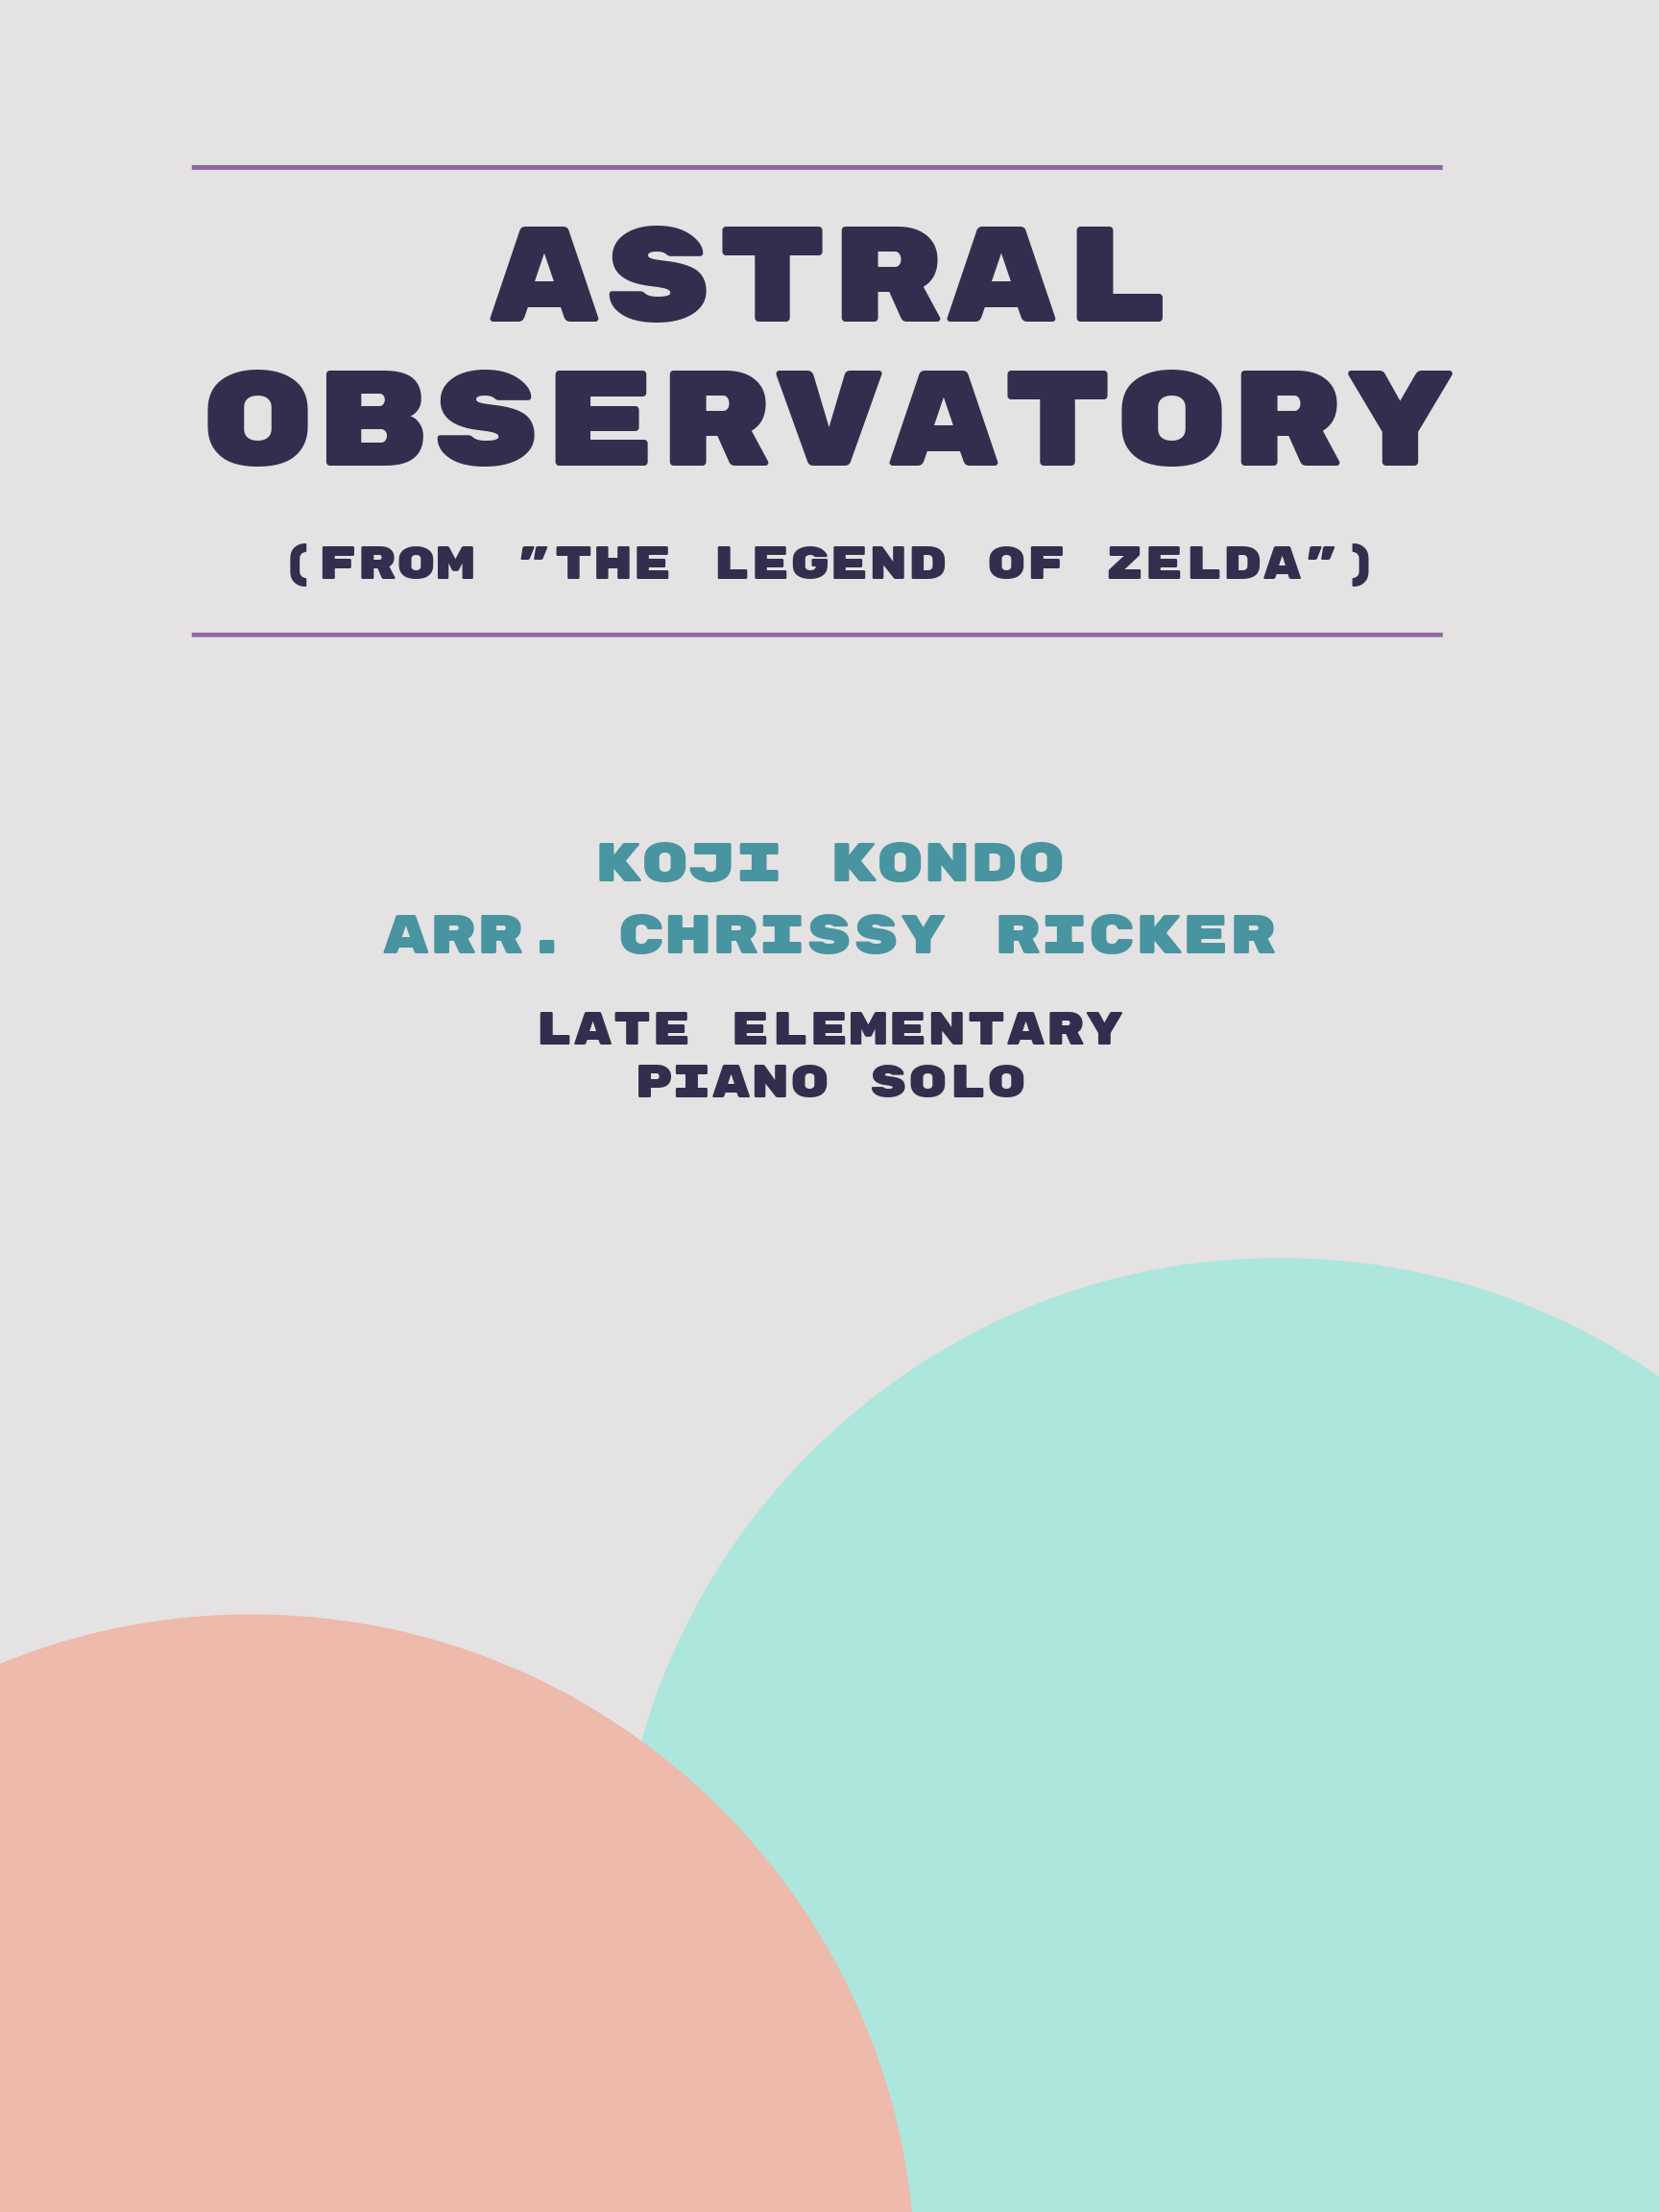 Astral Observatory by Koji Kondo